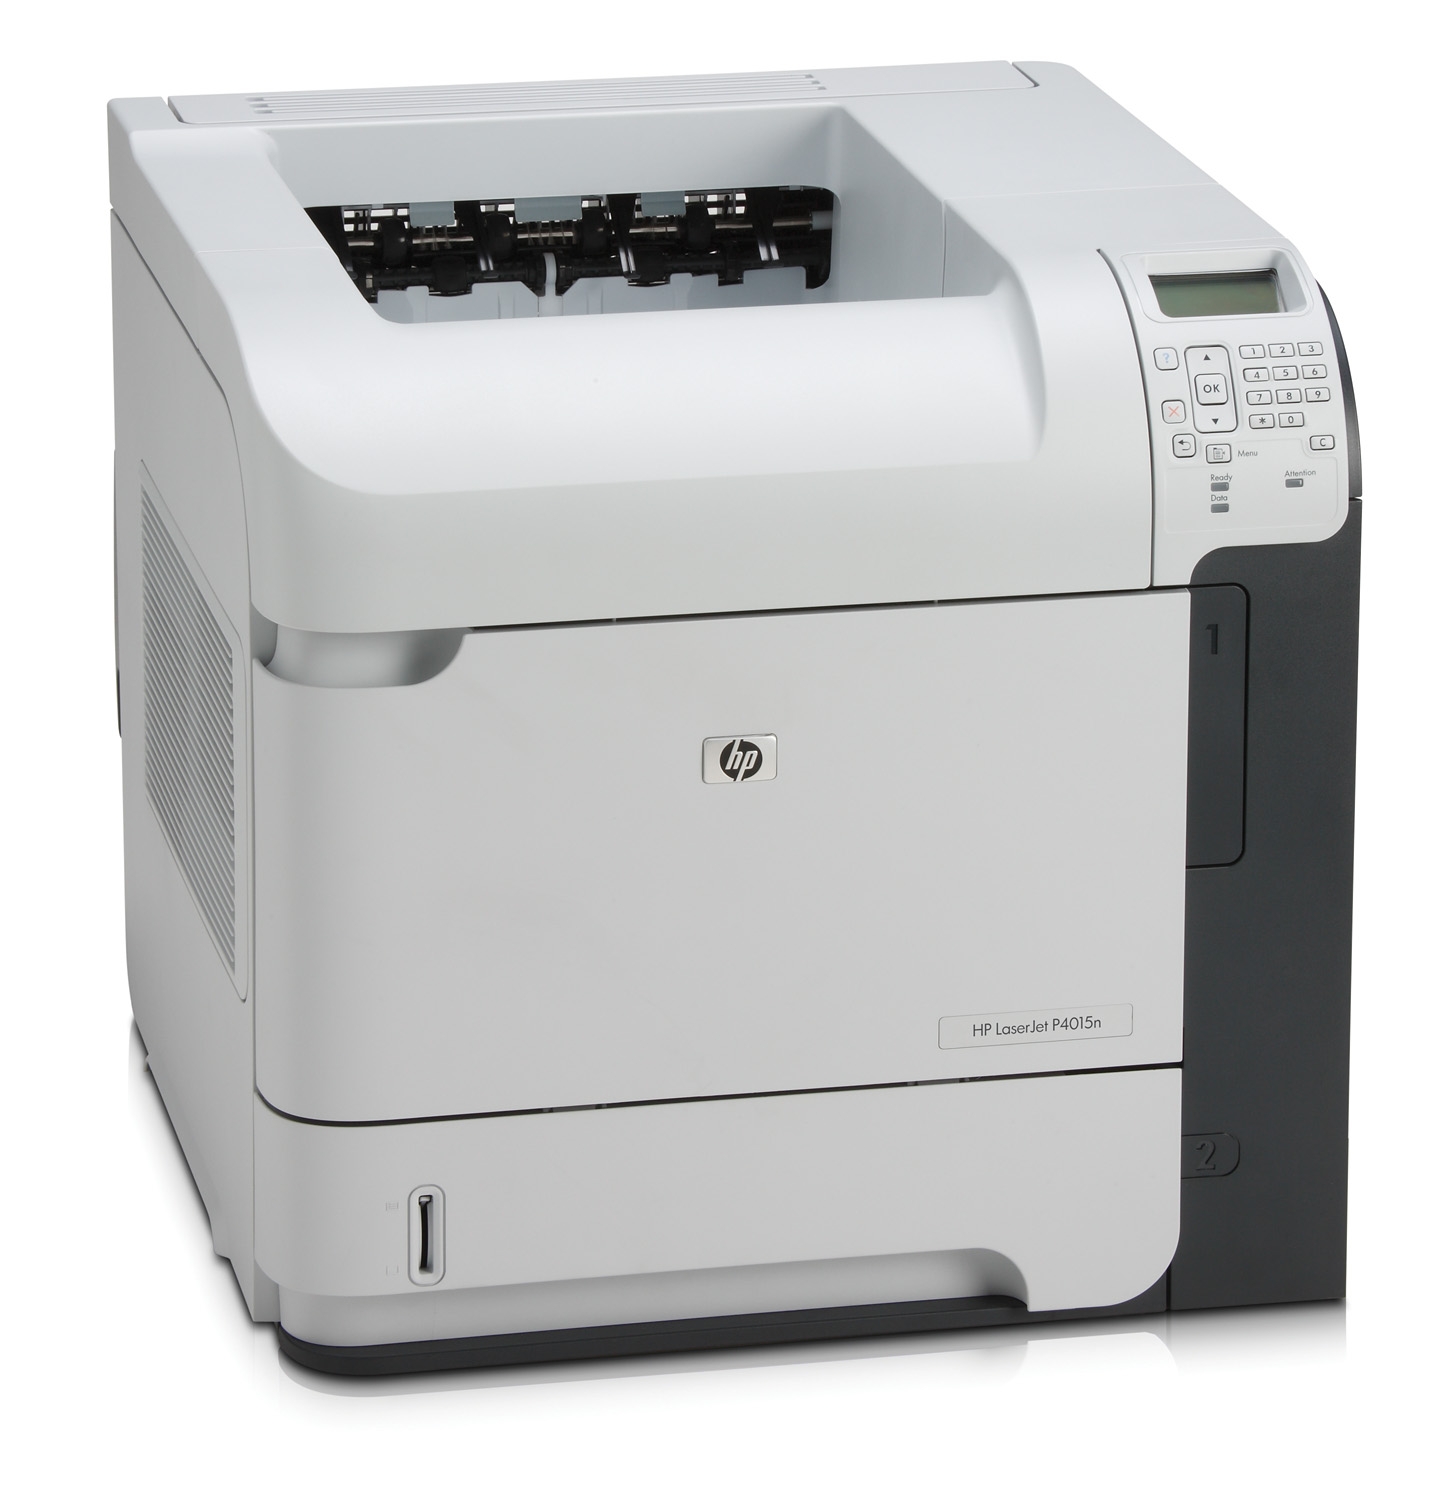 Kolorowa drukarka laserowa HP LaserJet P4015n